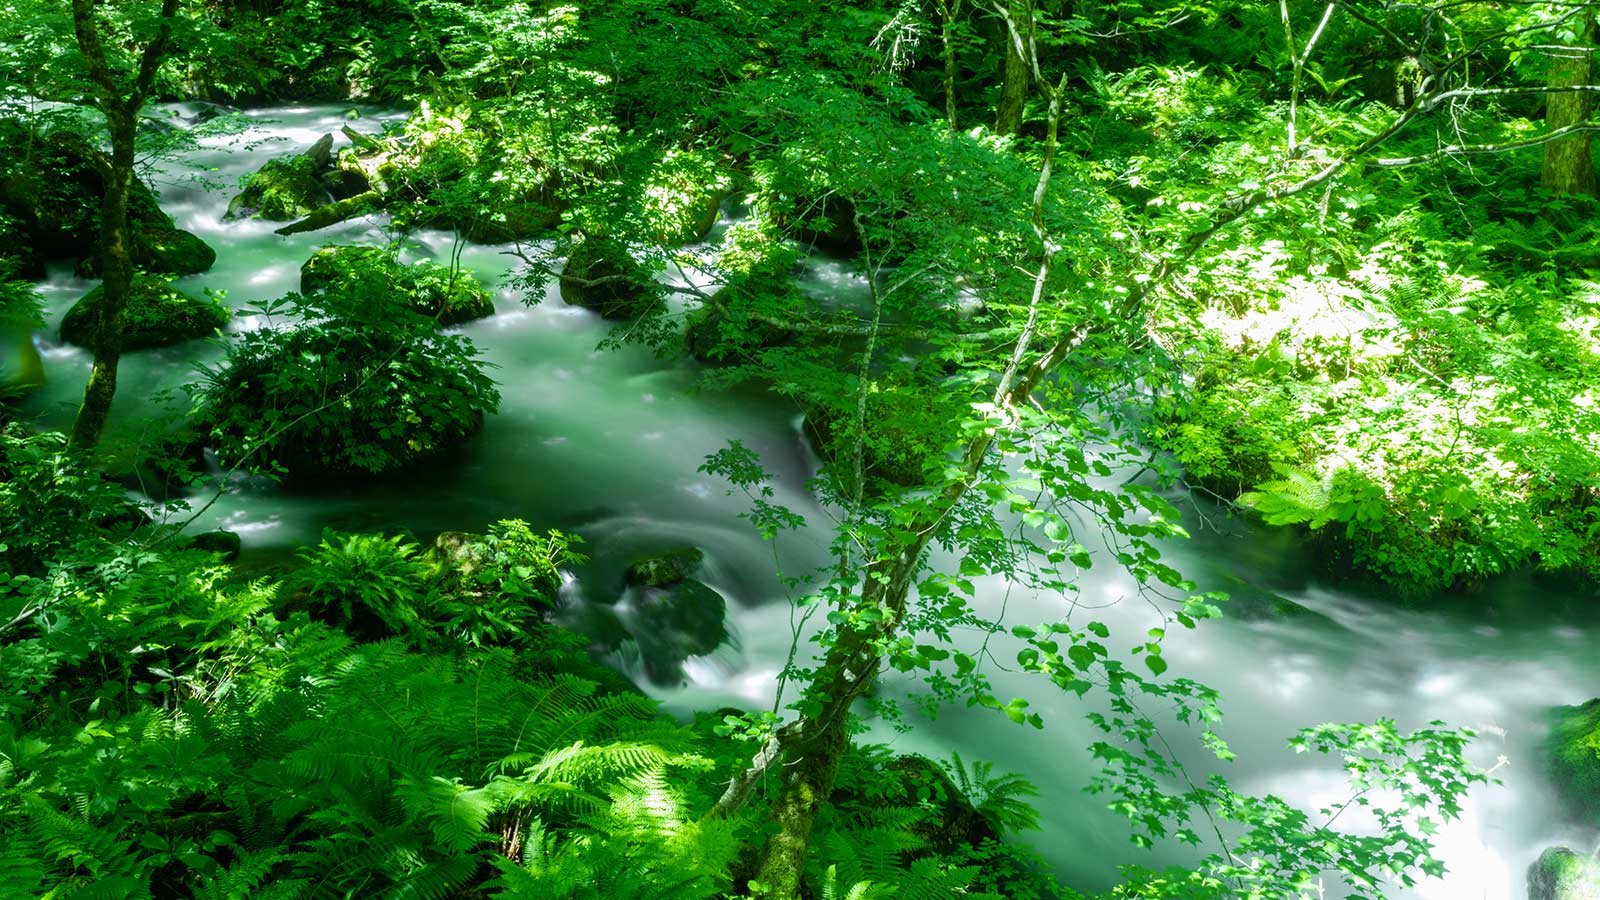 日本一美しい渓流沿いにある唯一のホテル「星野リゾート 奥入瀬渓流ホテル」で森に癒される旅